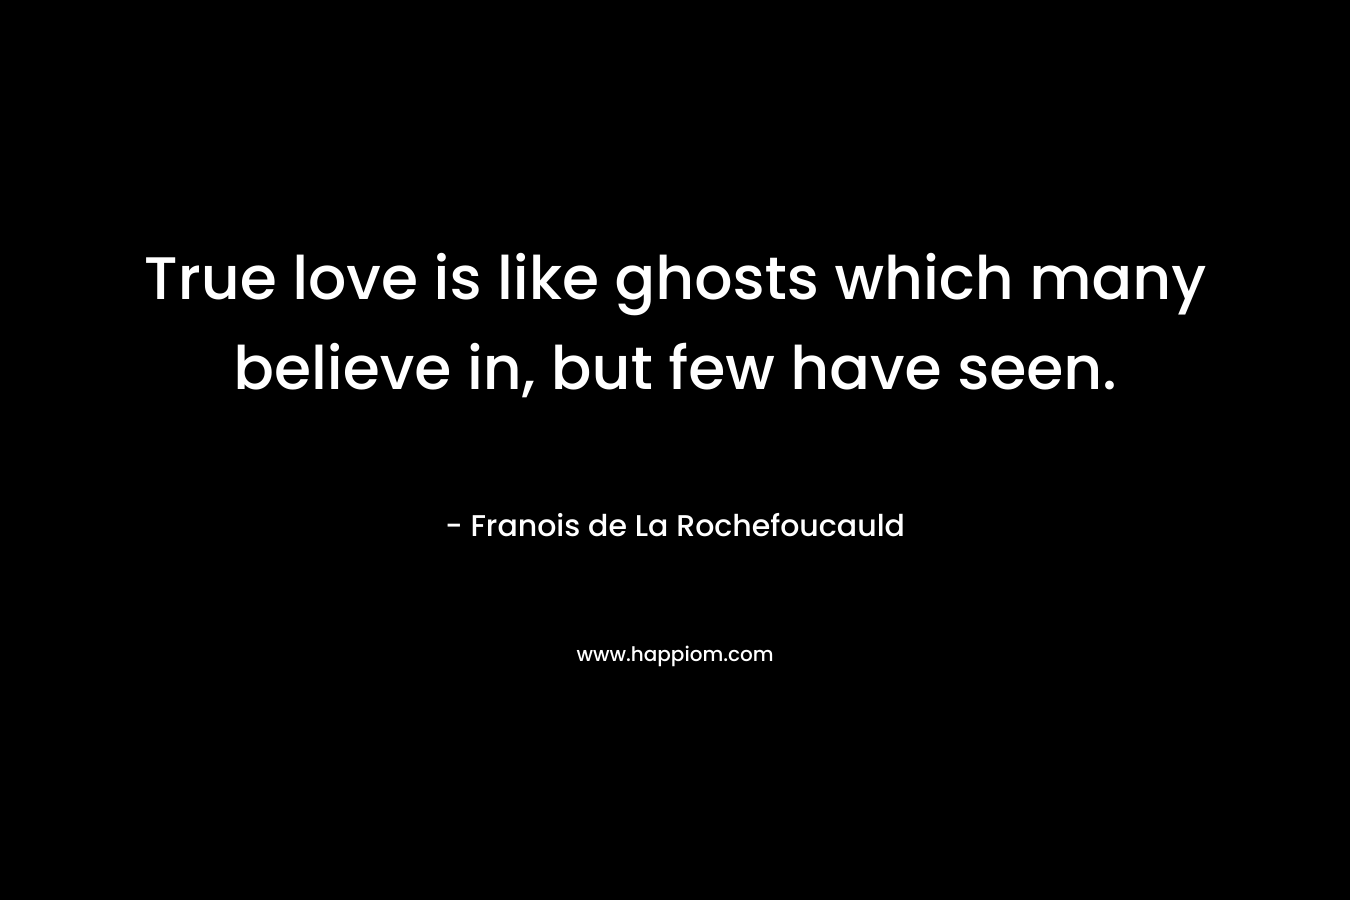 True love is like ghosts which many believe in, but few have seen. – Franois de La Rochefoucauld